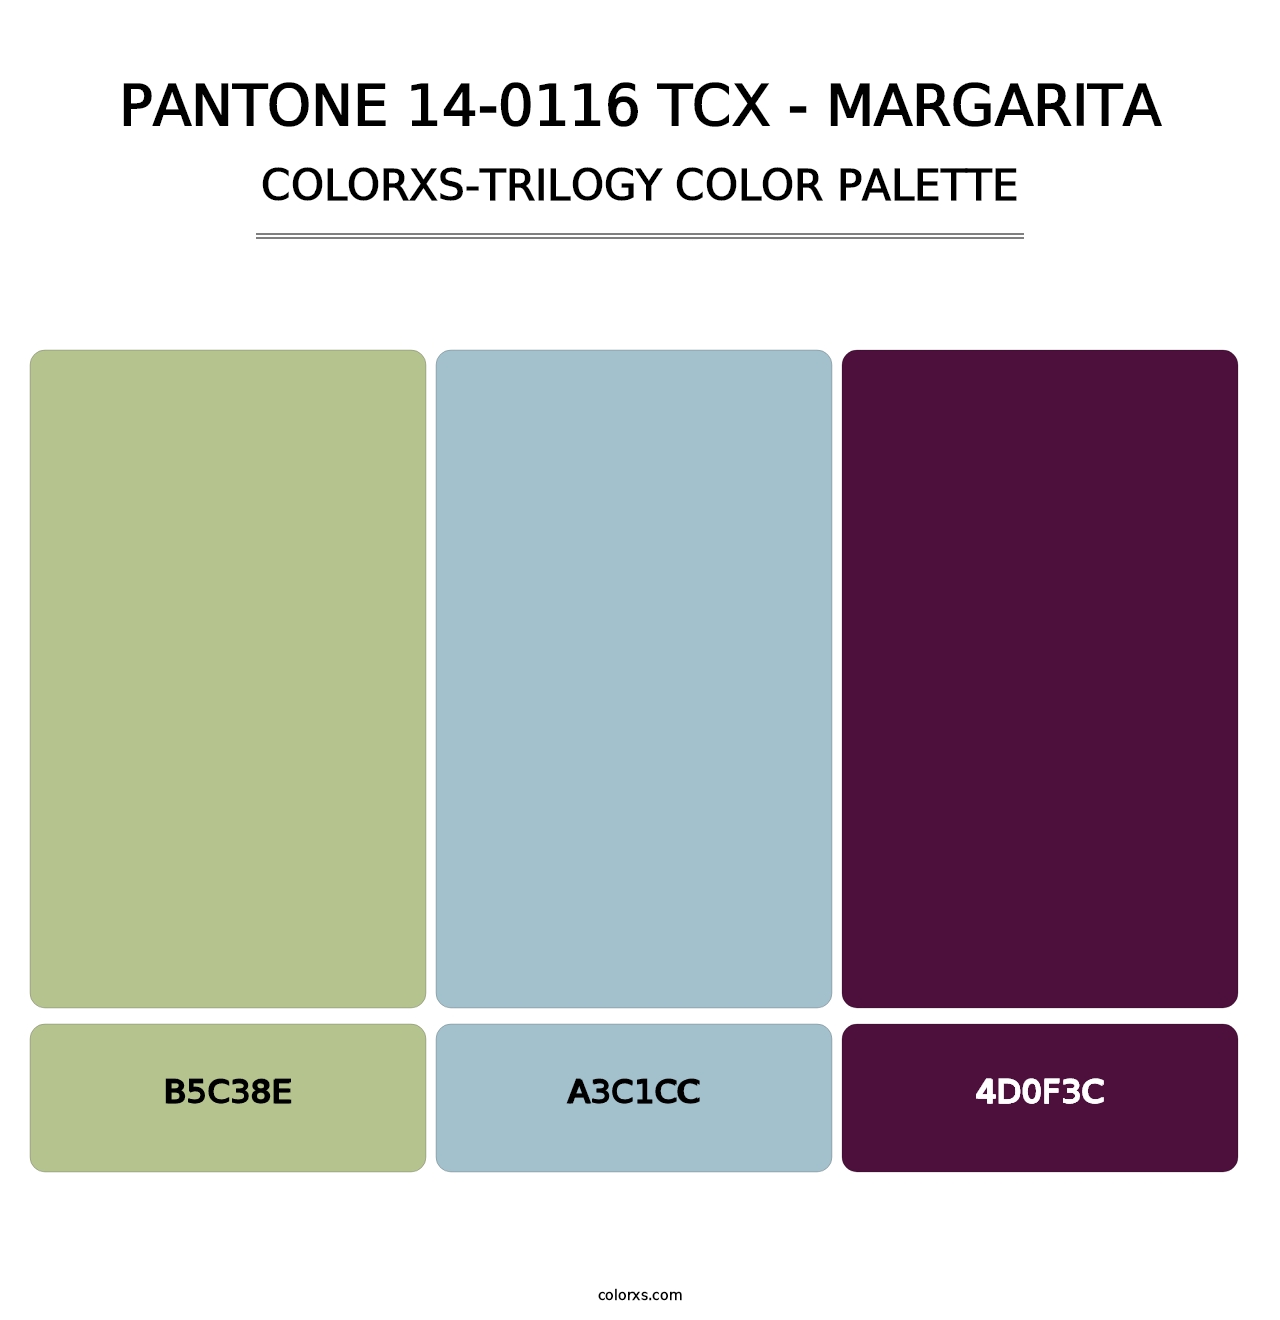 PANTONE 14-0116 TCX - Margarita - Colorxs Trilogy Palette